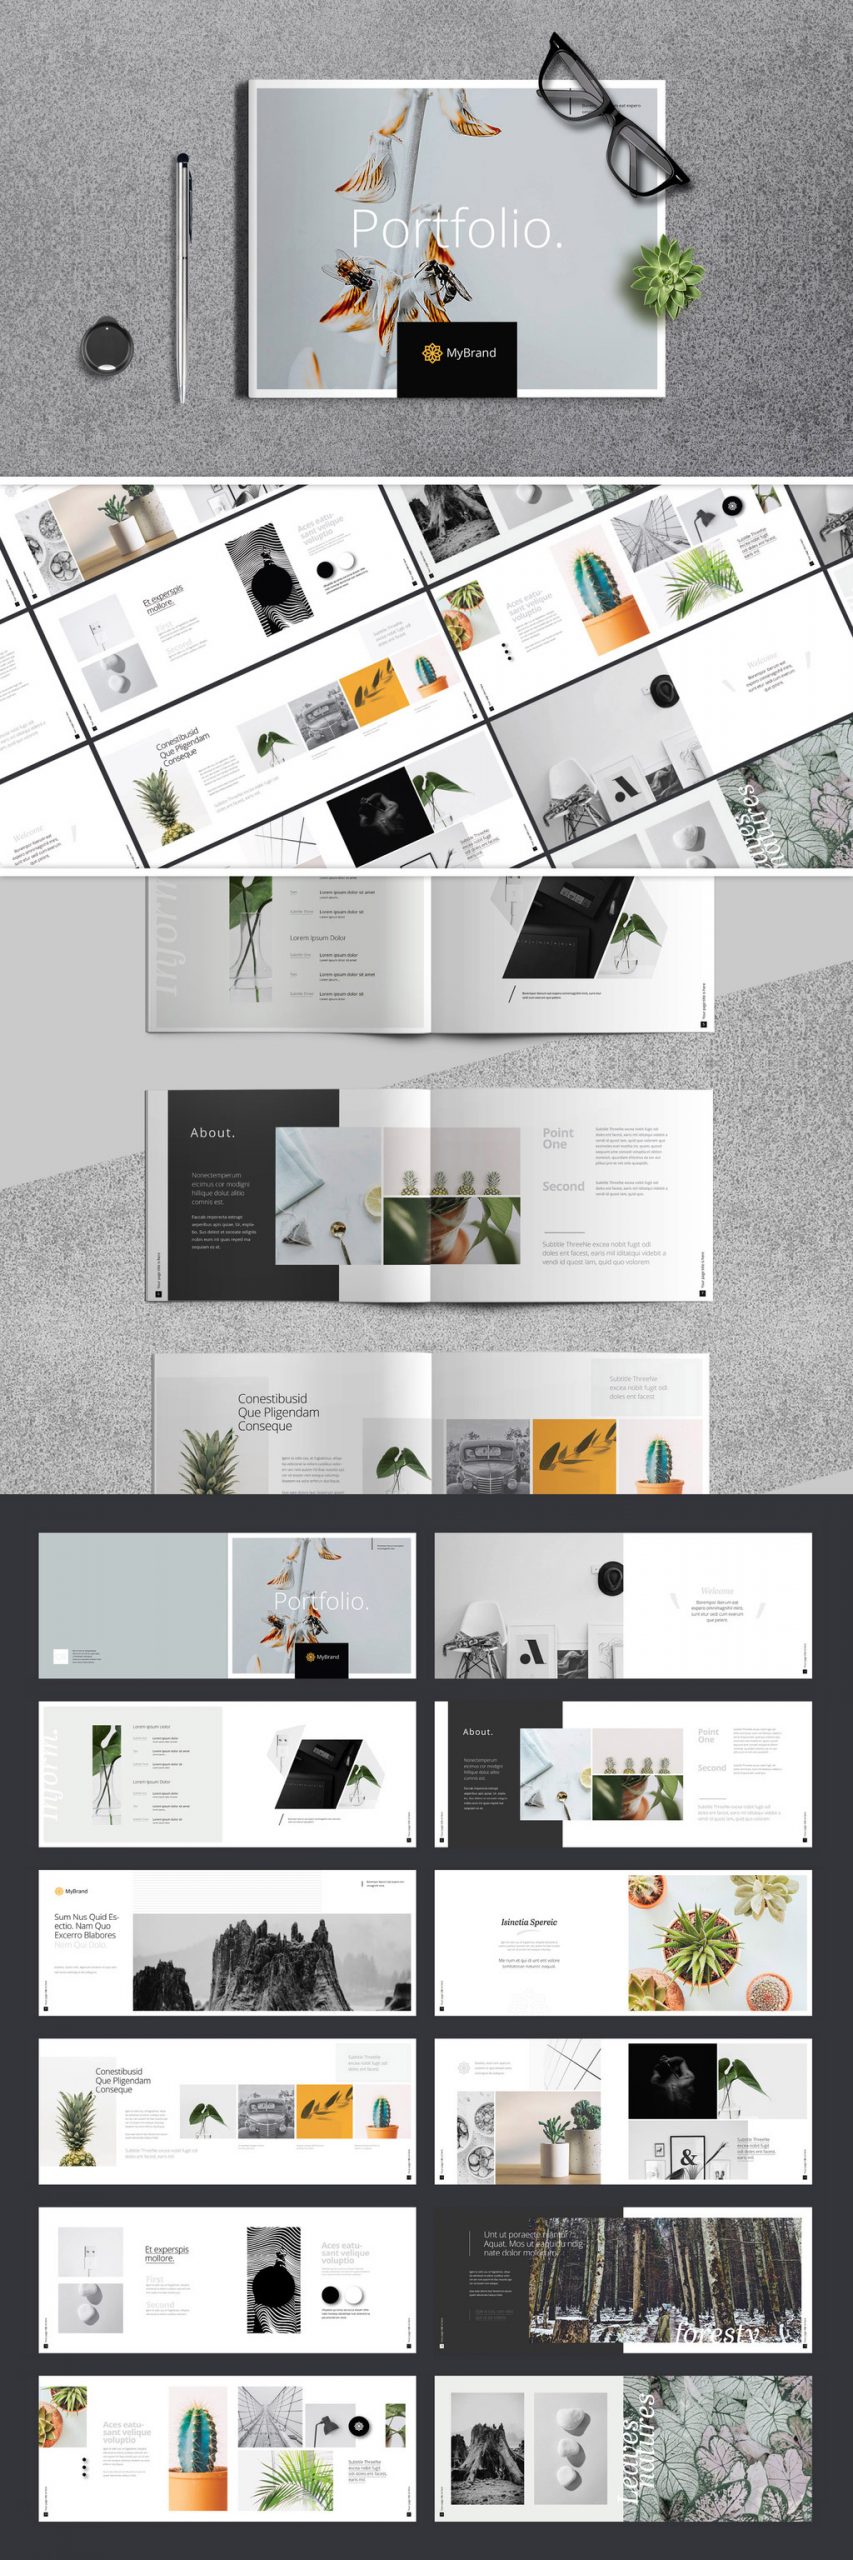 A multi-purpose portfolio brochure template for Adobe InDesign.